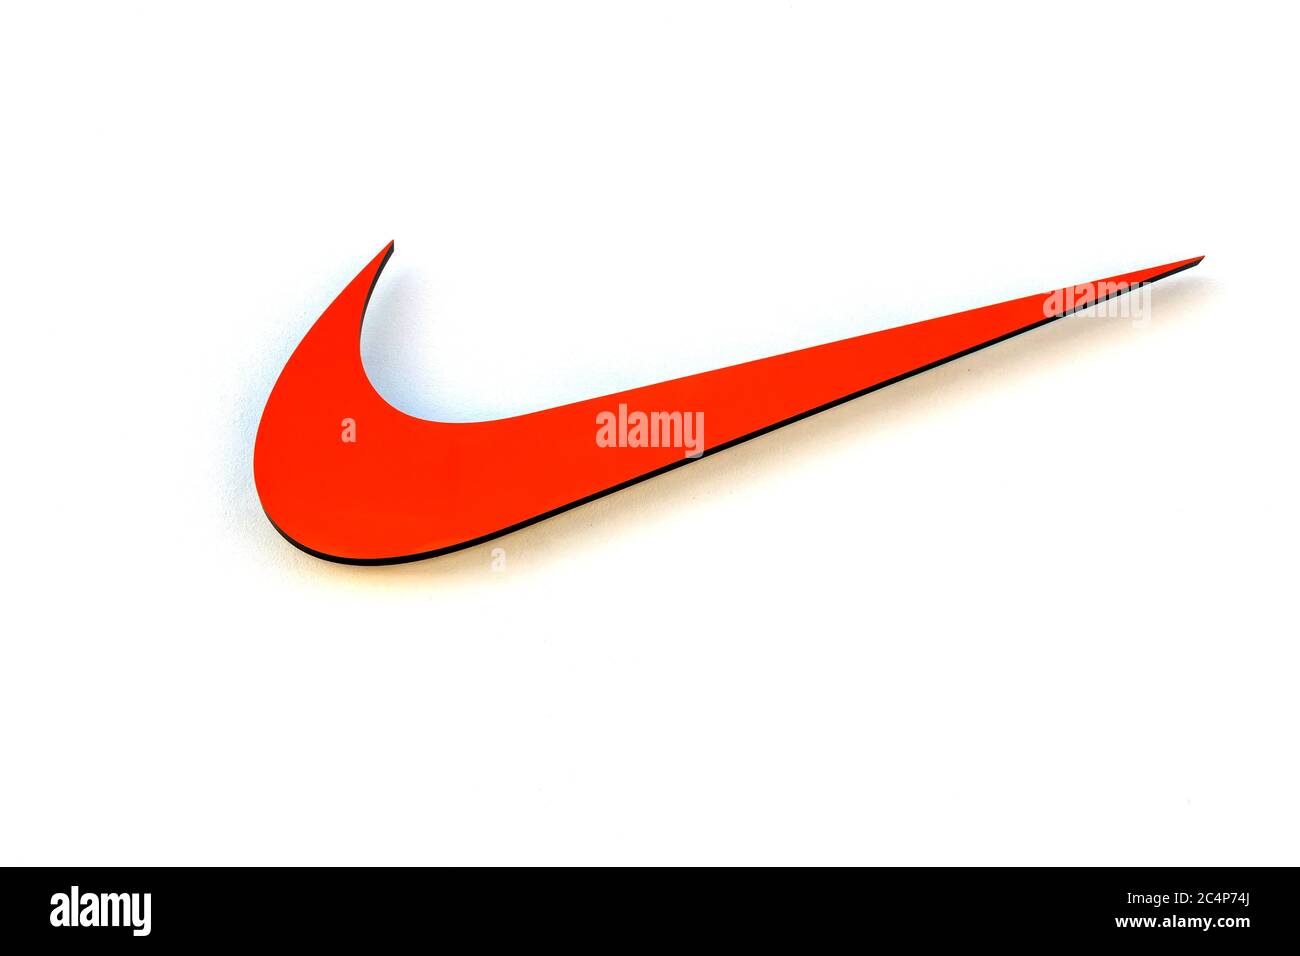 Herzogenaurach : logotipo de Nike firma el 13 DE AGOSTO de 2017 en ALEMANIA  Nike Inc. Es una corporación multinacional estadounidense que se dedica a  la venta de calzado Fotografía de stock - Alamy